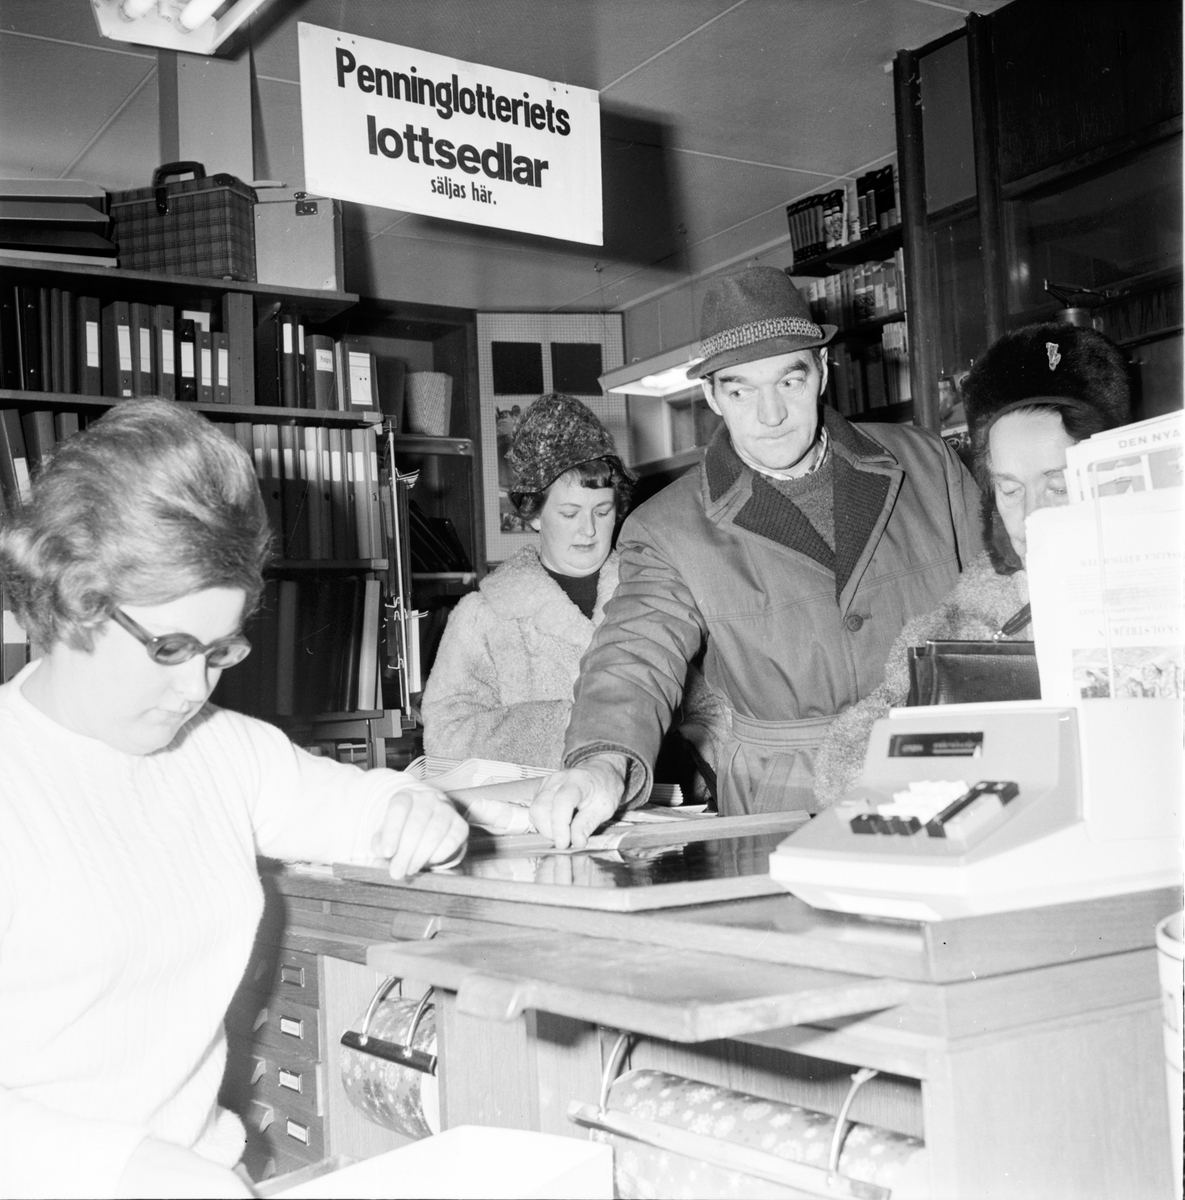 Helins bokhandel,
Högsta vinsten,
15 December 1966